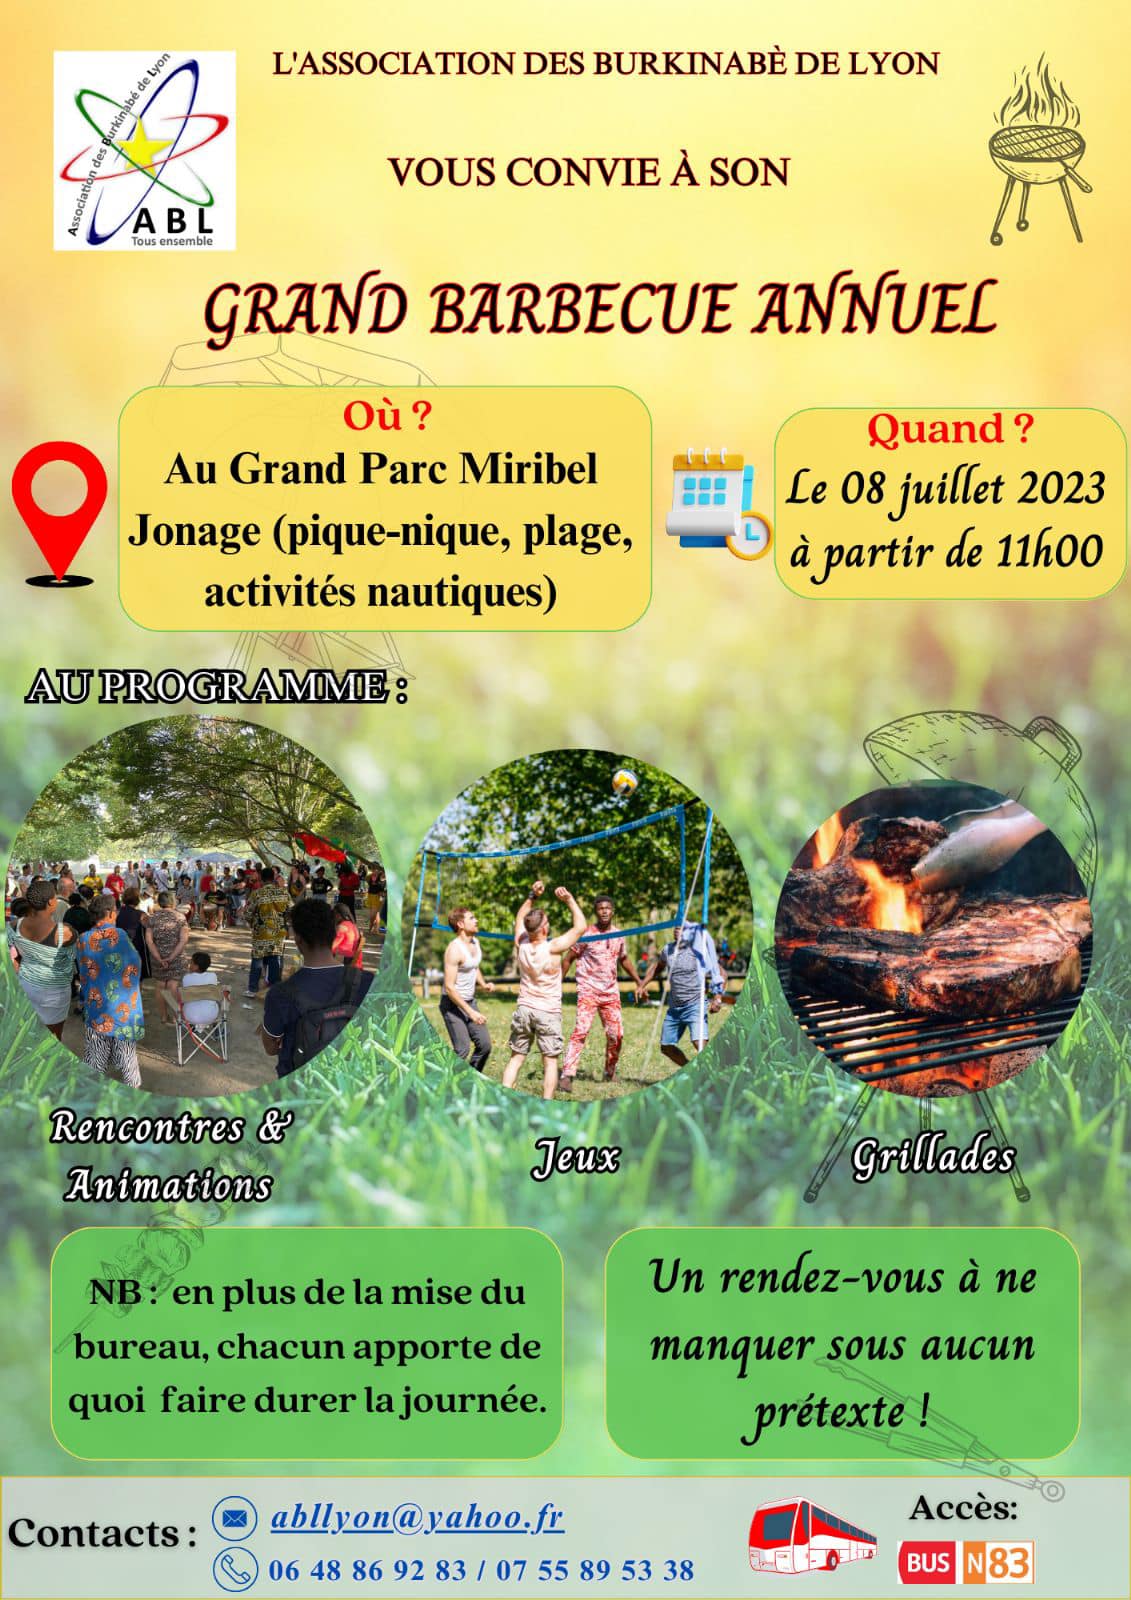 [BURKINA] L’ABL organise son traditionnel barbecue  d’été annuel au par de Miribel (69) samedi 8 juillet 2023